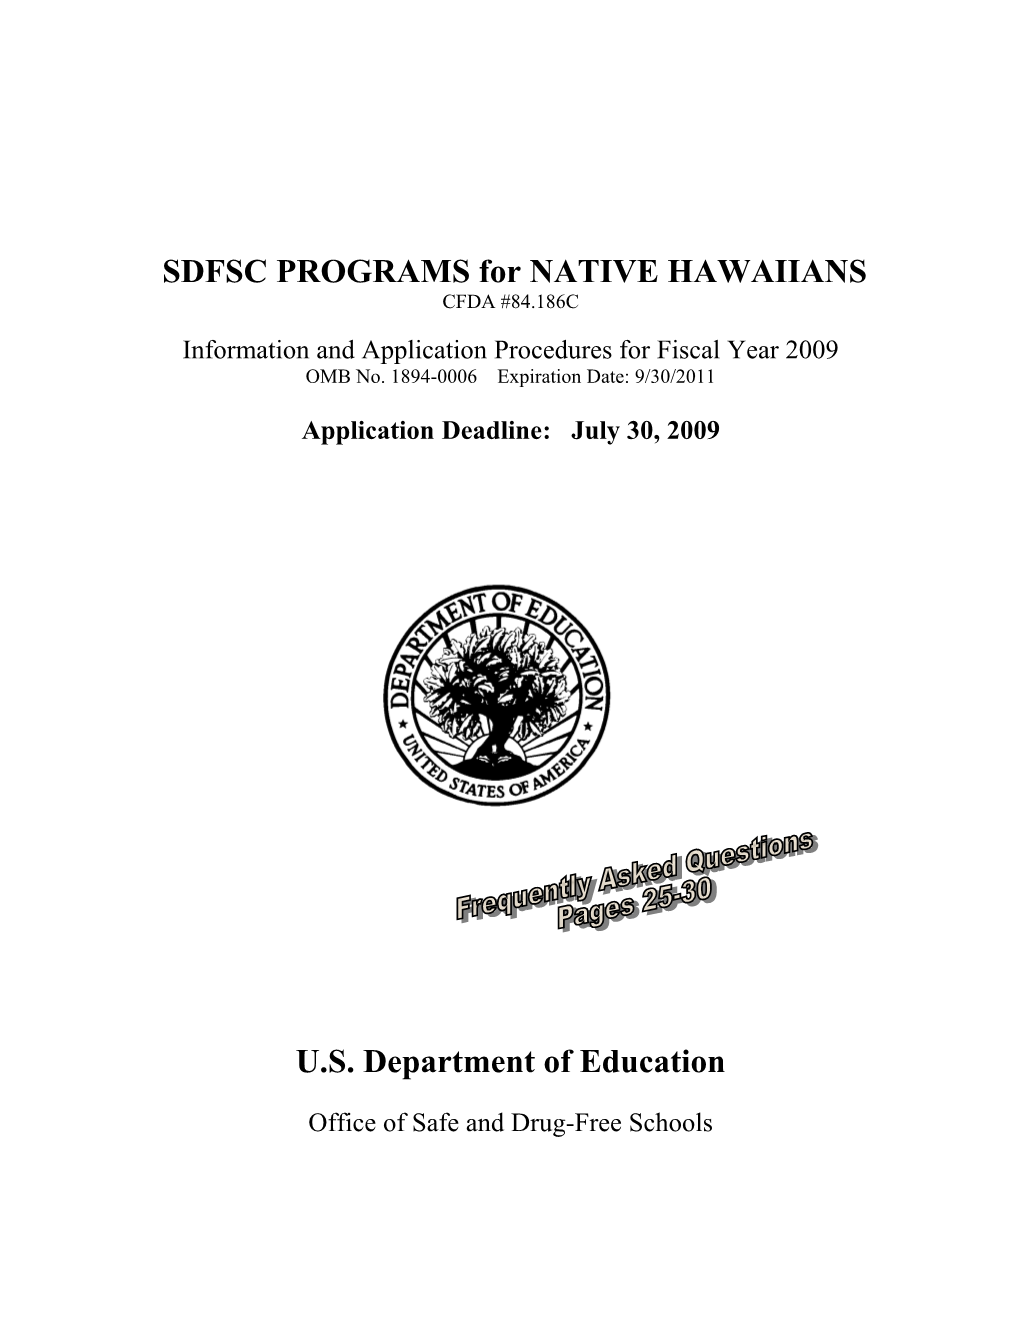 SDFSC Programs for Native Hawaiians (MS WORD)